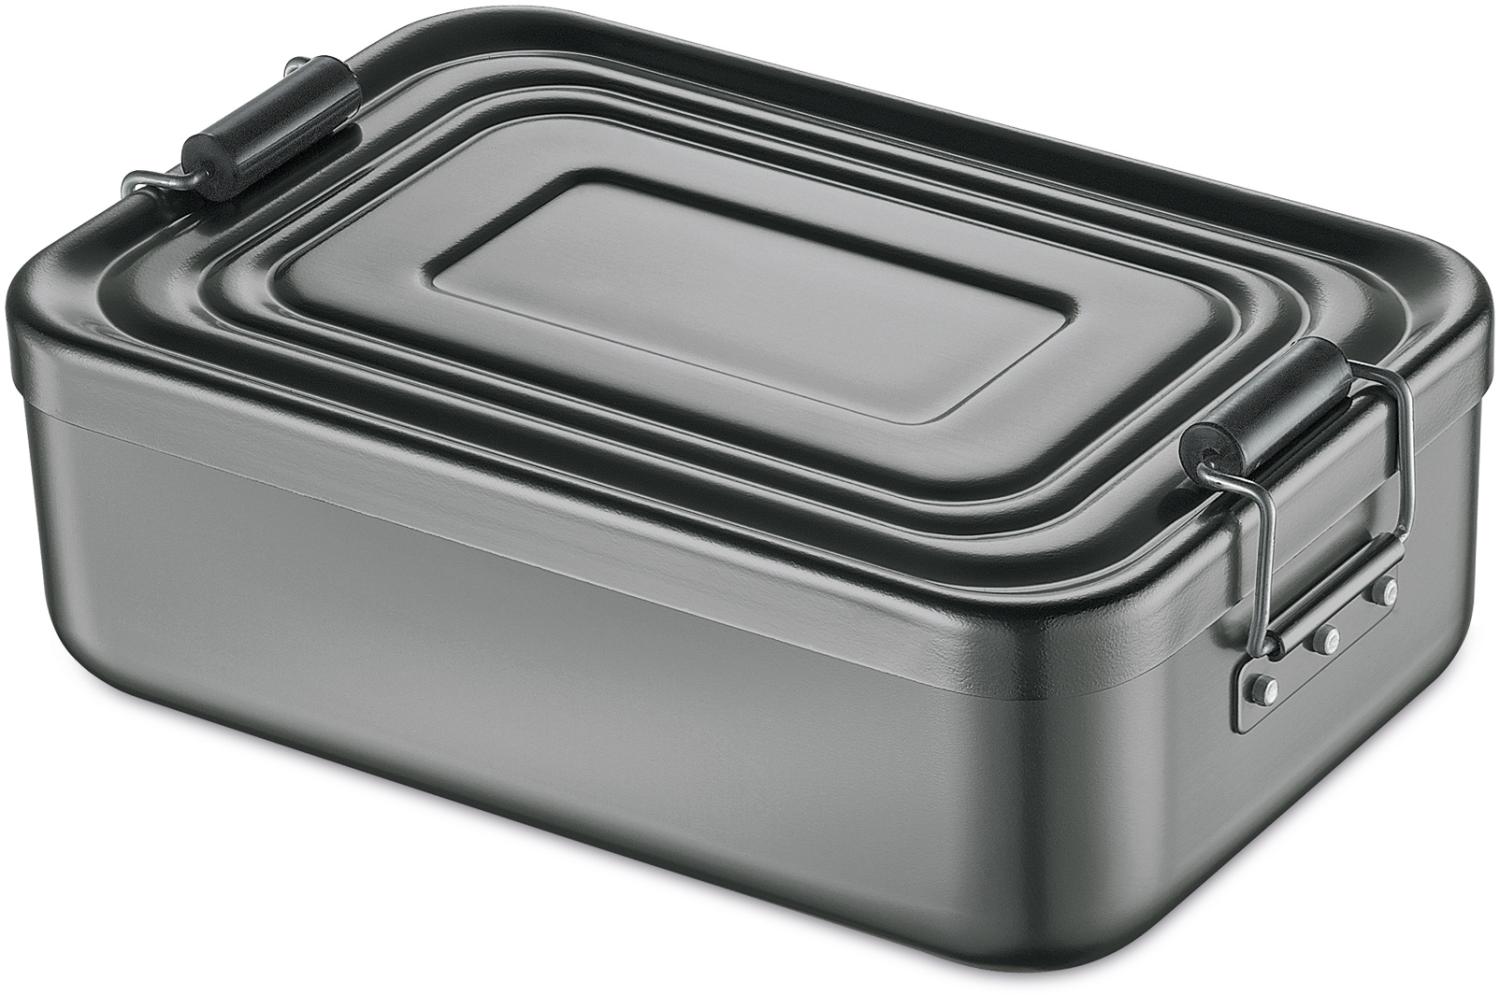 Küchenprofi Lunch Box Aluminium anthrazit klein Bild 1